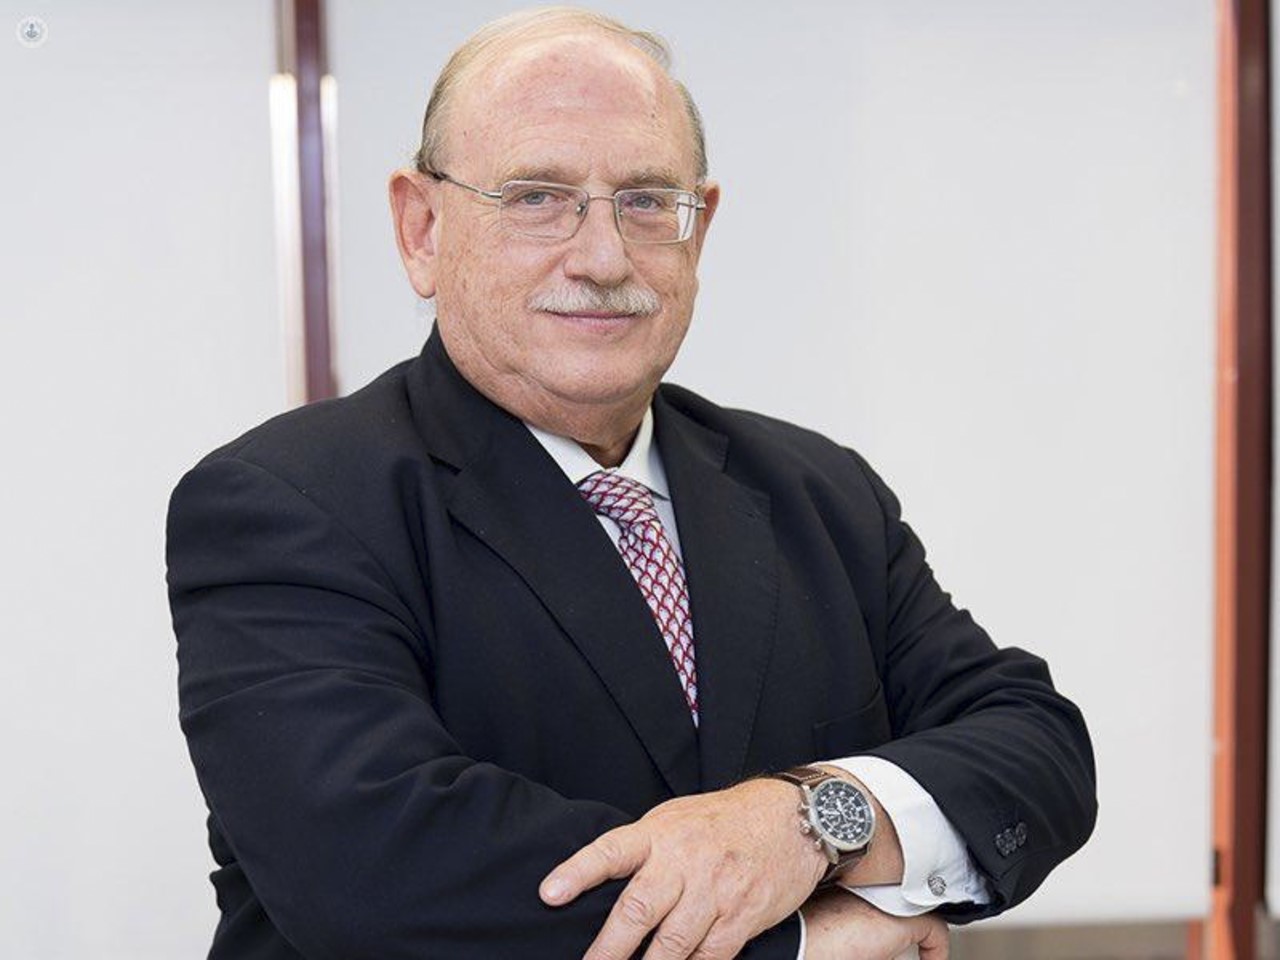 Joaquín Díaz, jefe del servicio de cirugía del Hospital de La Paz, muerto por Covid en 2020